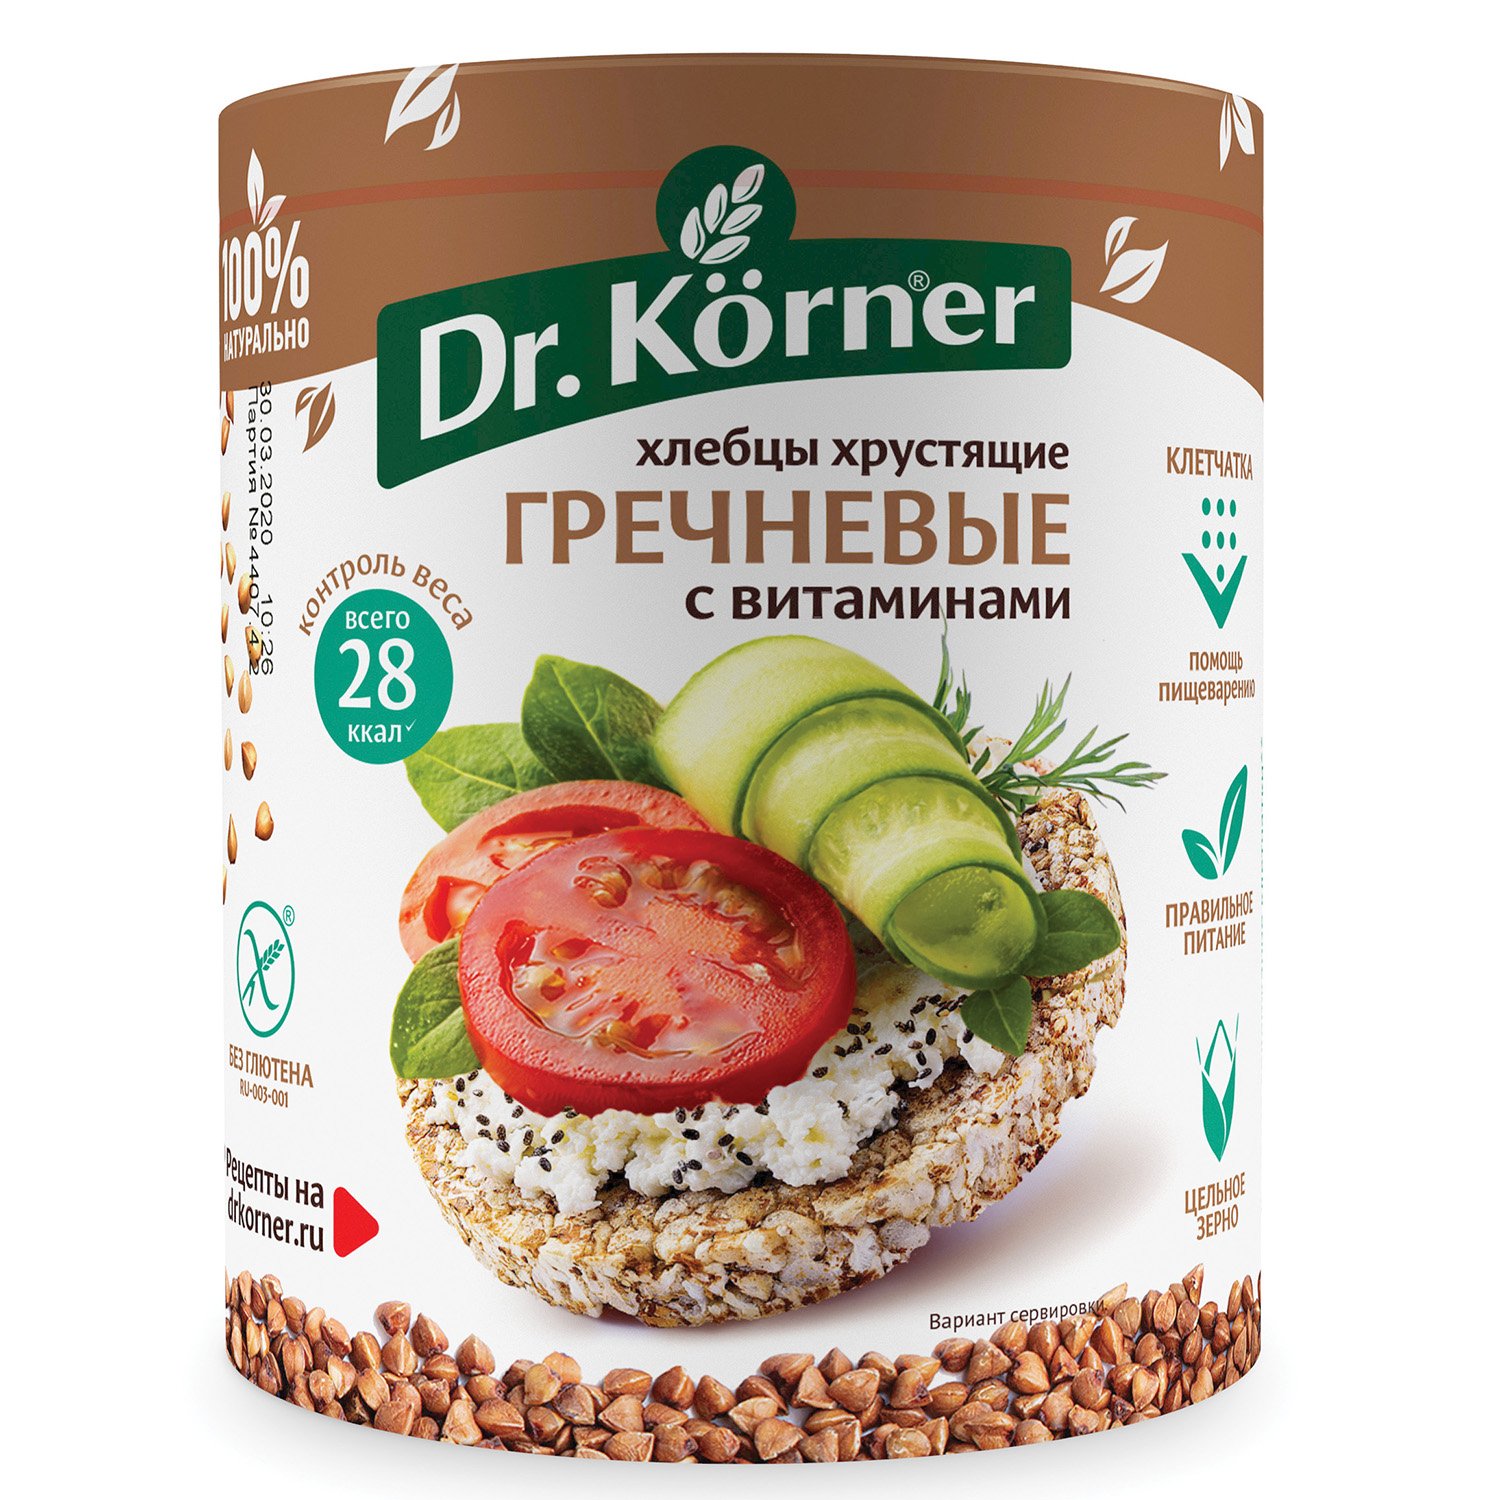 Dr.Korner хлебцы хрустящие гречневые с витаминами 100г